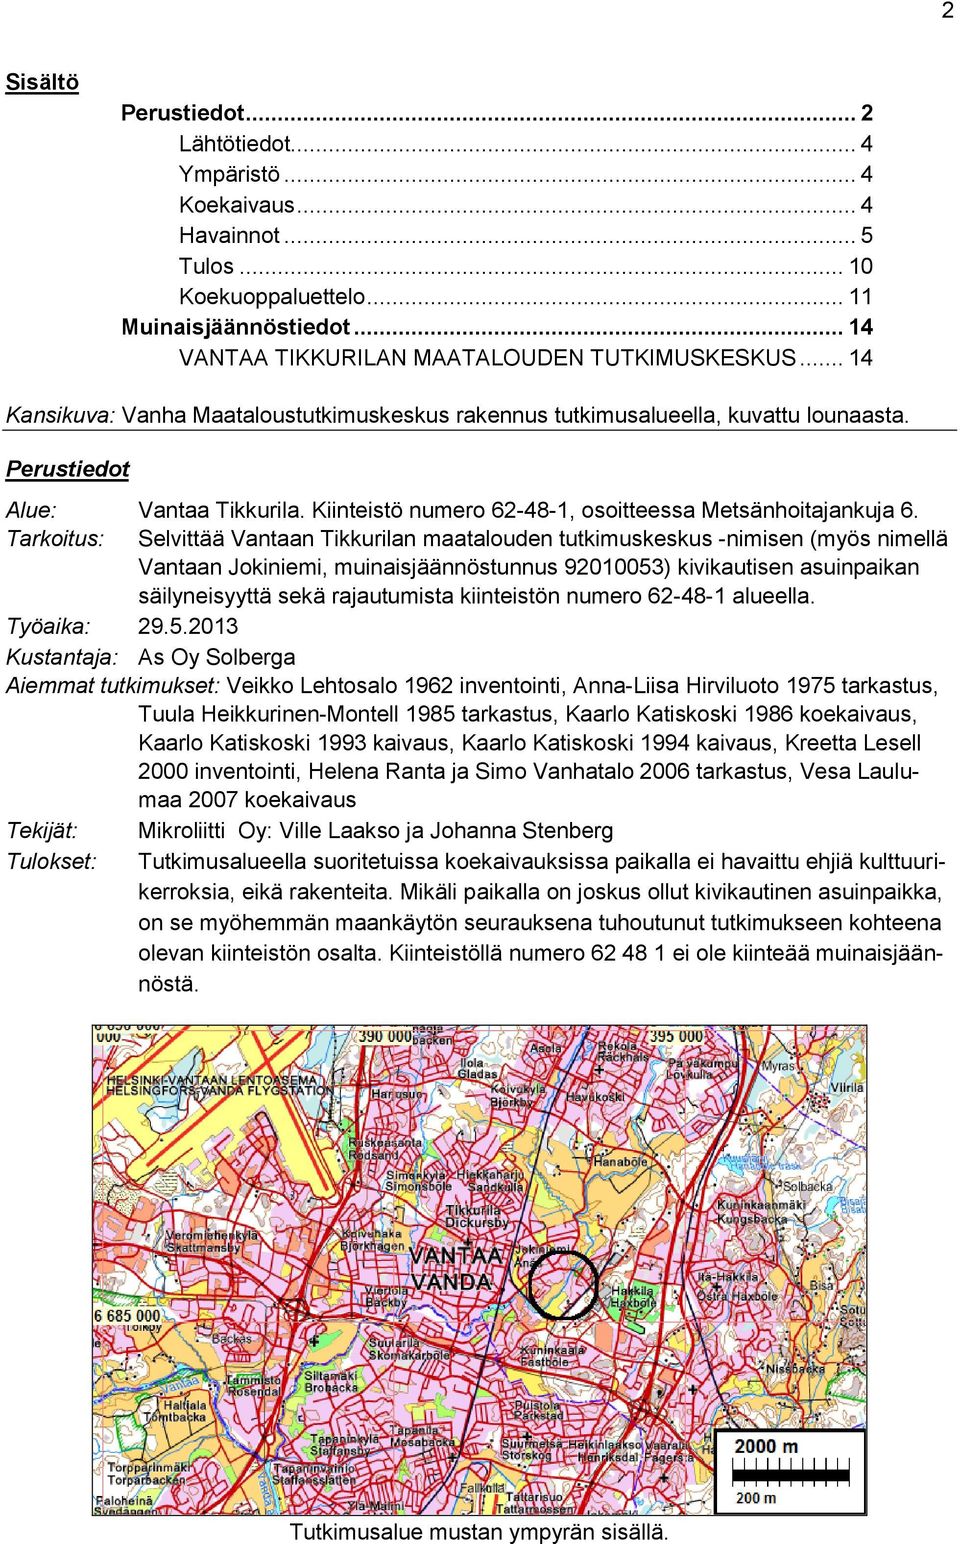 Tarkoitus: Selvittää Vantaan Tikkurilan maatalouden tutkimuskeskus -nimisen (myös nimellä Vantaan Jokiniemi, muinaisjäännöstunnus 92010053) kivikautisen asuinpaikan säilyneisyyttä sekä rajautumista